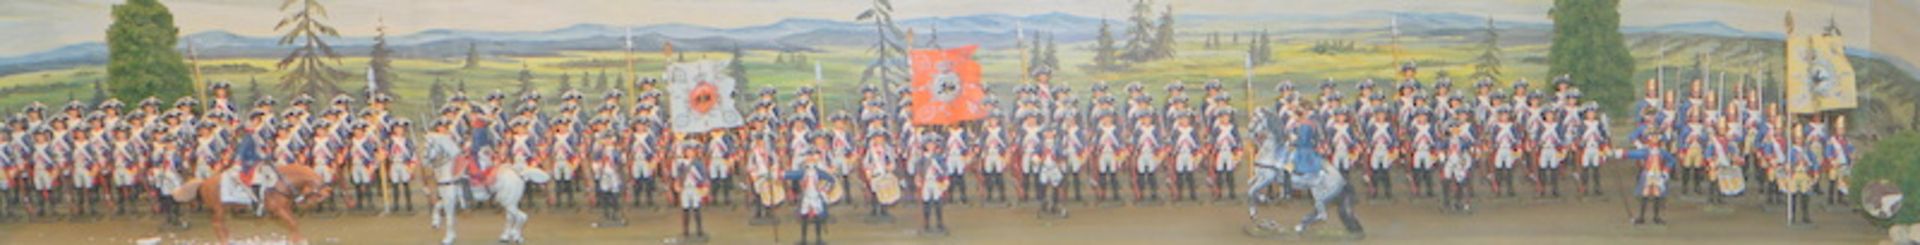 Großes Zinnfigurendiorama, Preußische Armee, Friedrich der Große - Image 2 of 3